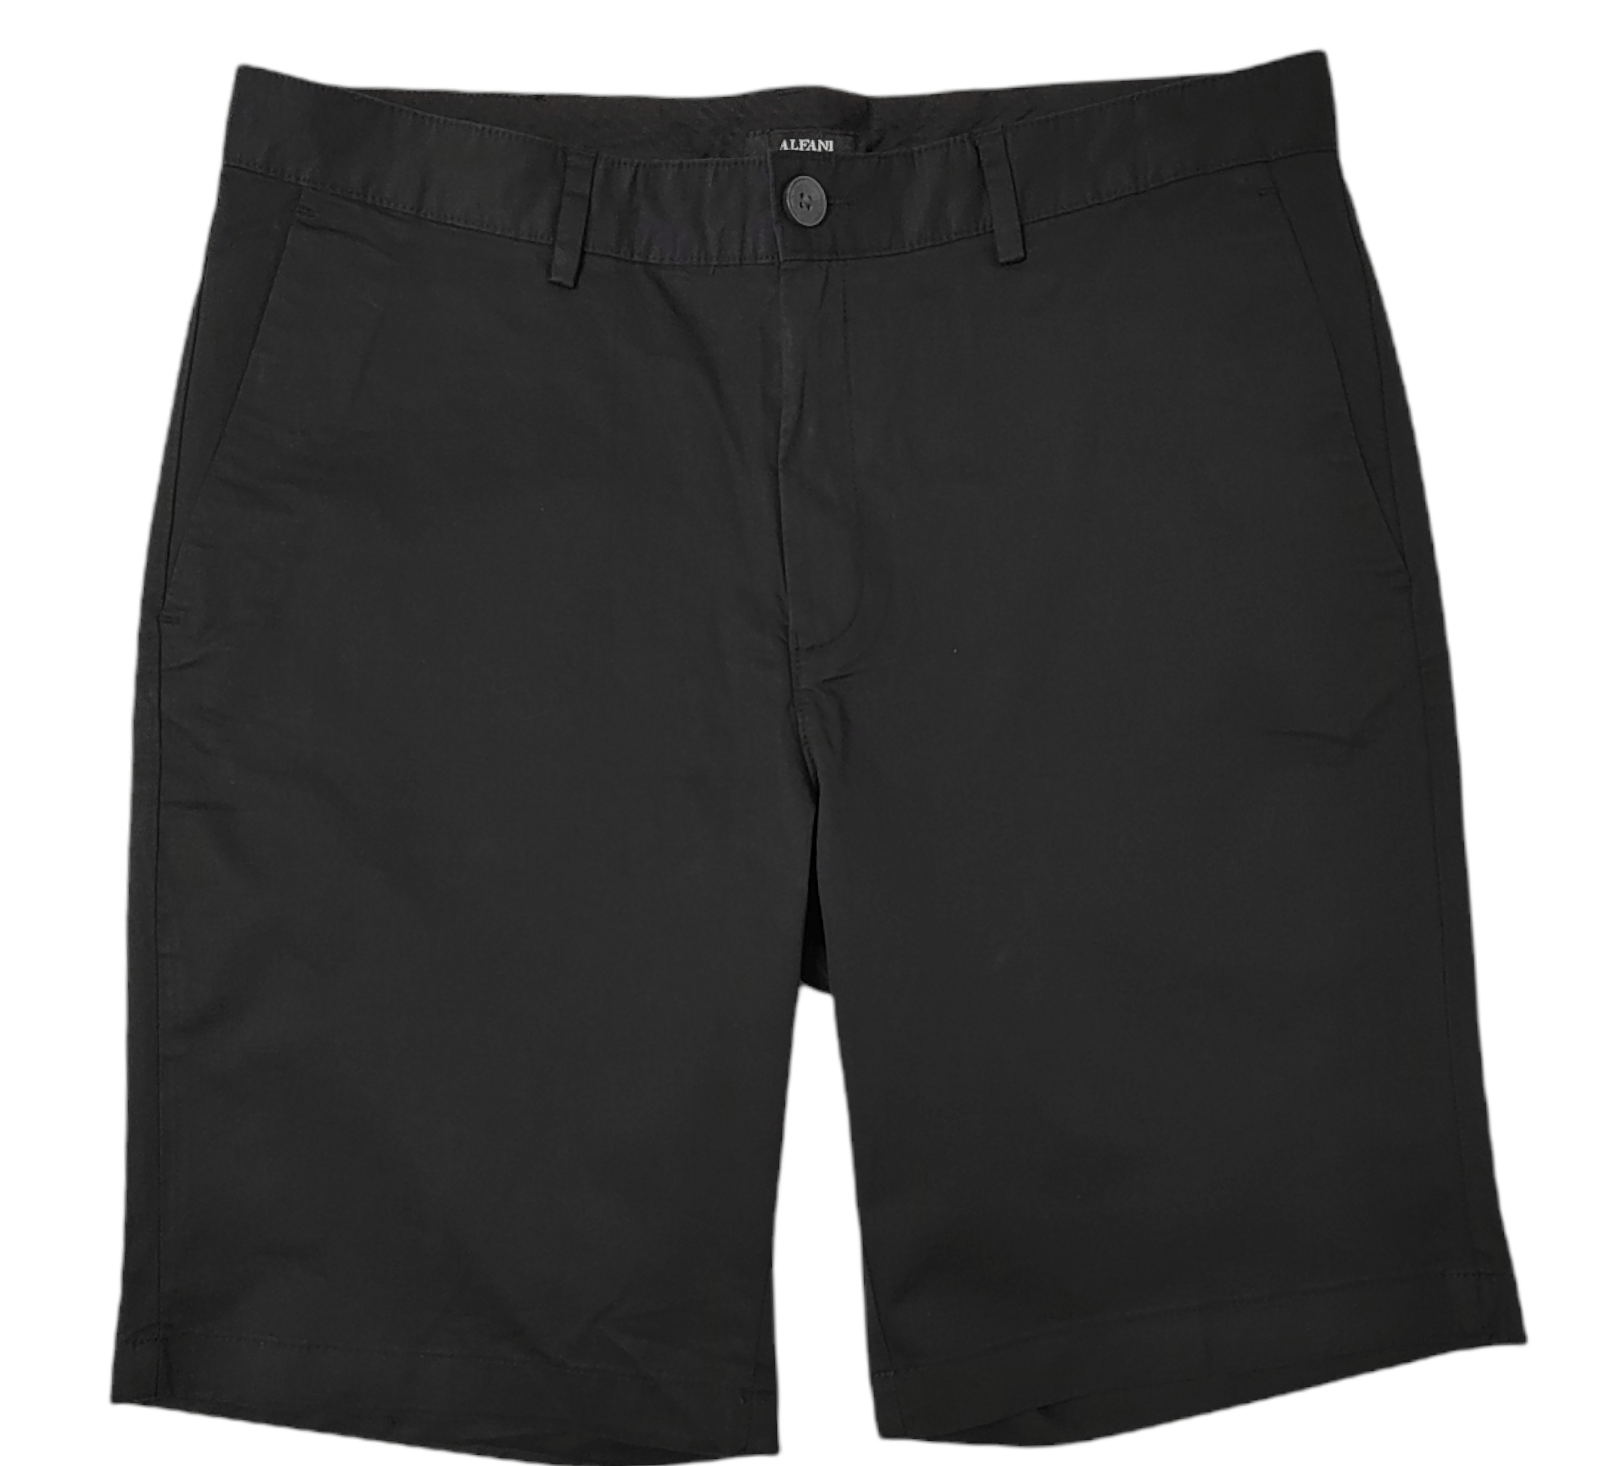 ElOutlet - Men Summer Men Shorts Men Shorts - Black